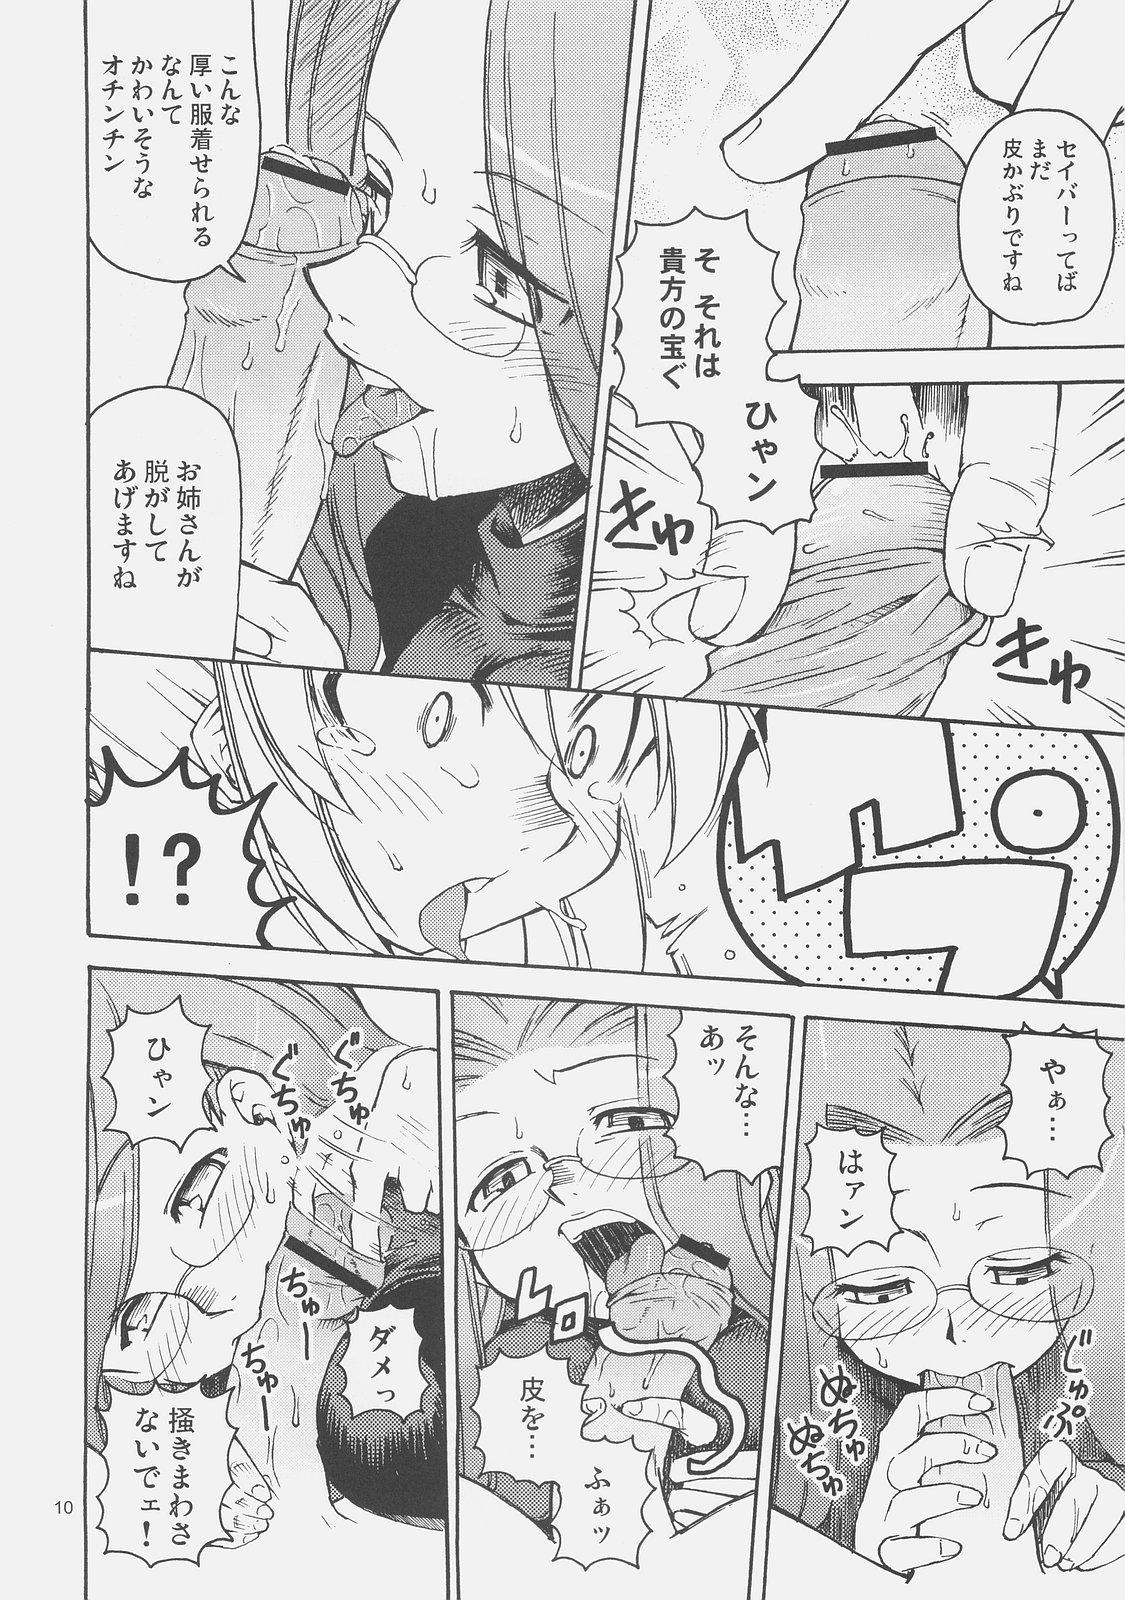 Wet Cunts Kishi to Kihei no Ichinichi - Fate hollow ataraxia Cartoon - Page 9